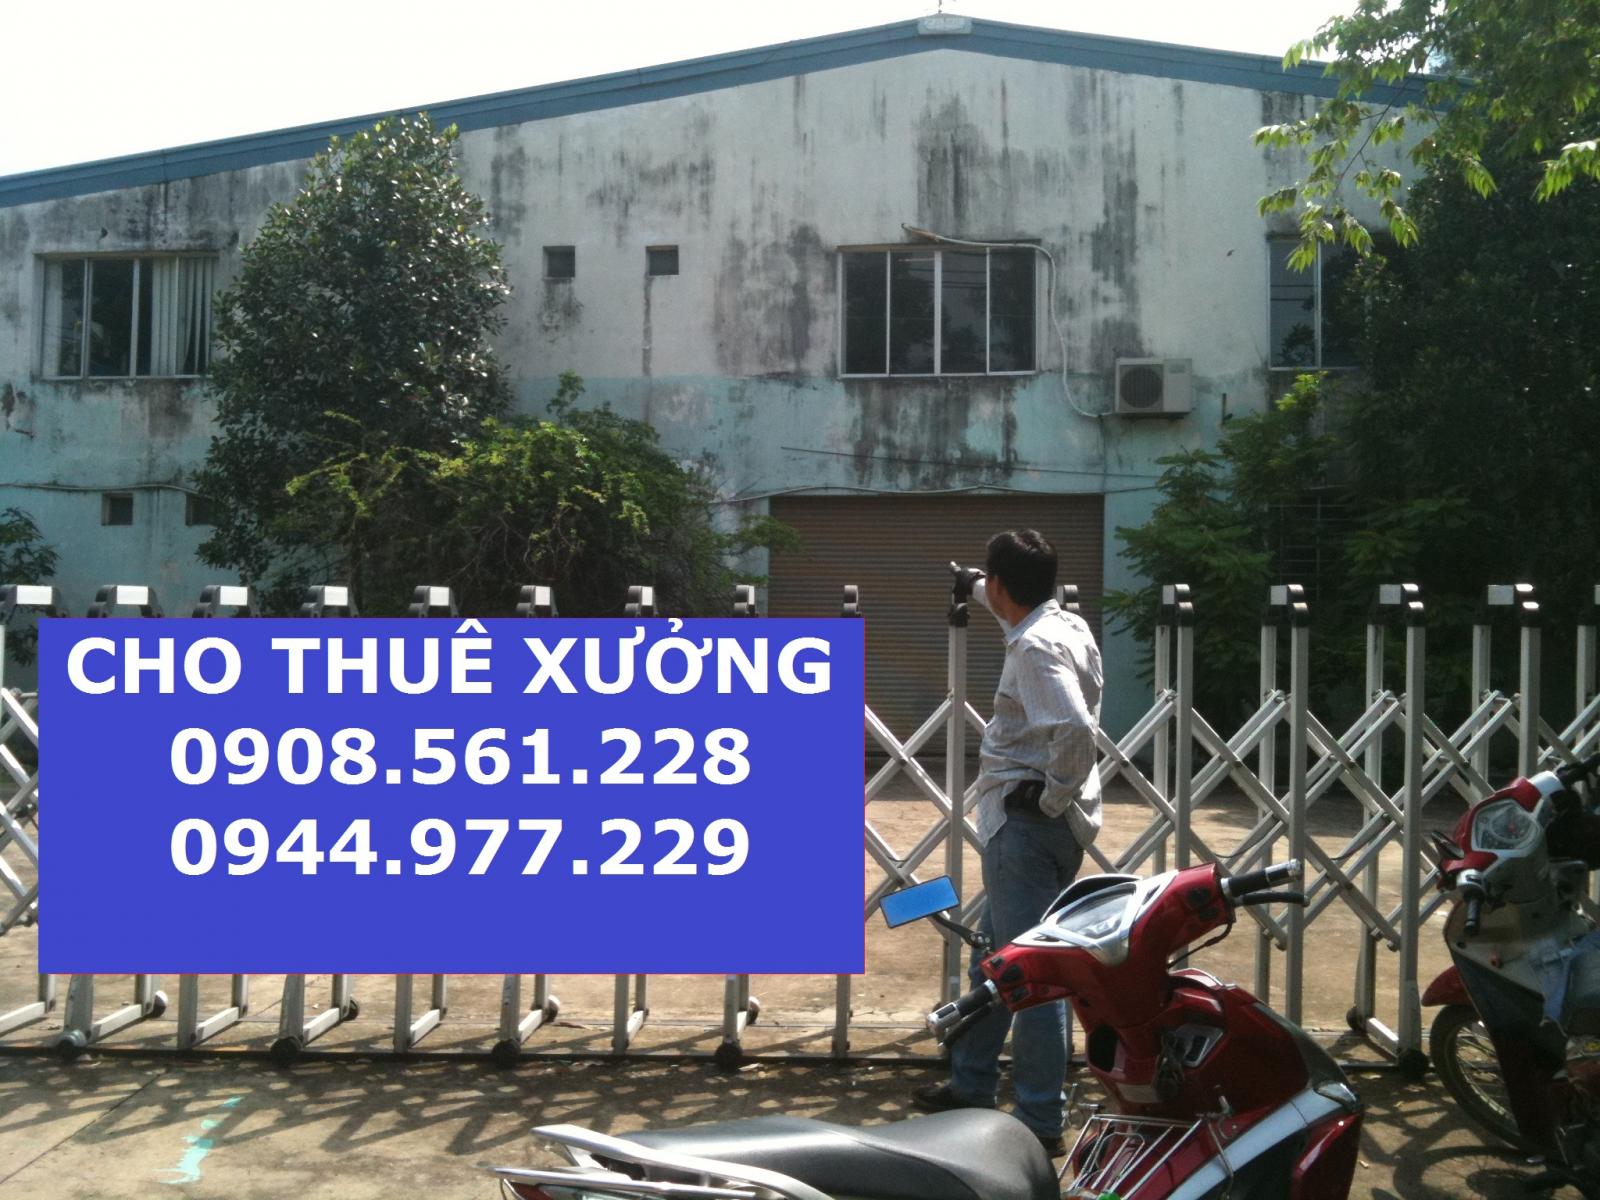 Nhà kho cho thuê đường Hà Huy Giáp - Phường Thạnh Lộc - Q12, DT: 2000m2 giá 65 tr/tháng. LH: 0937.388.709